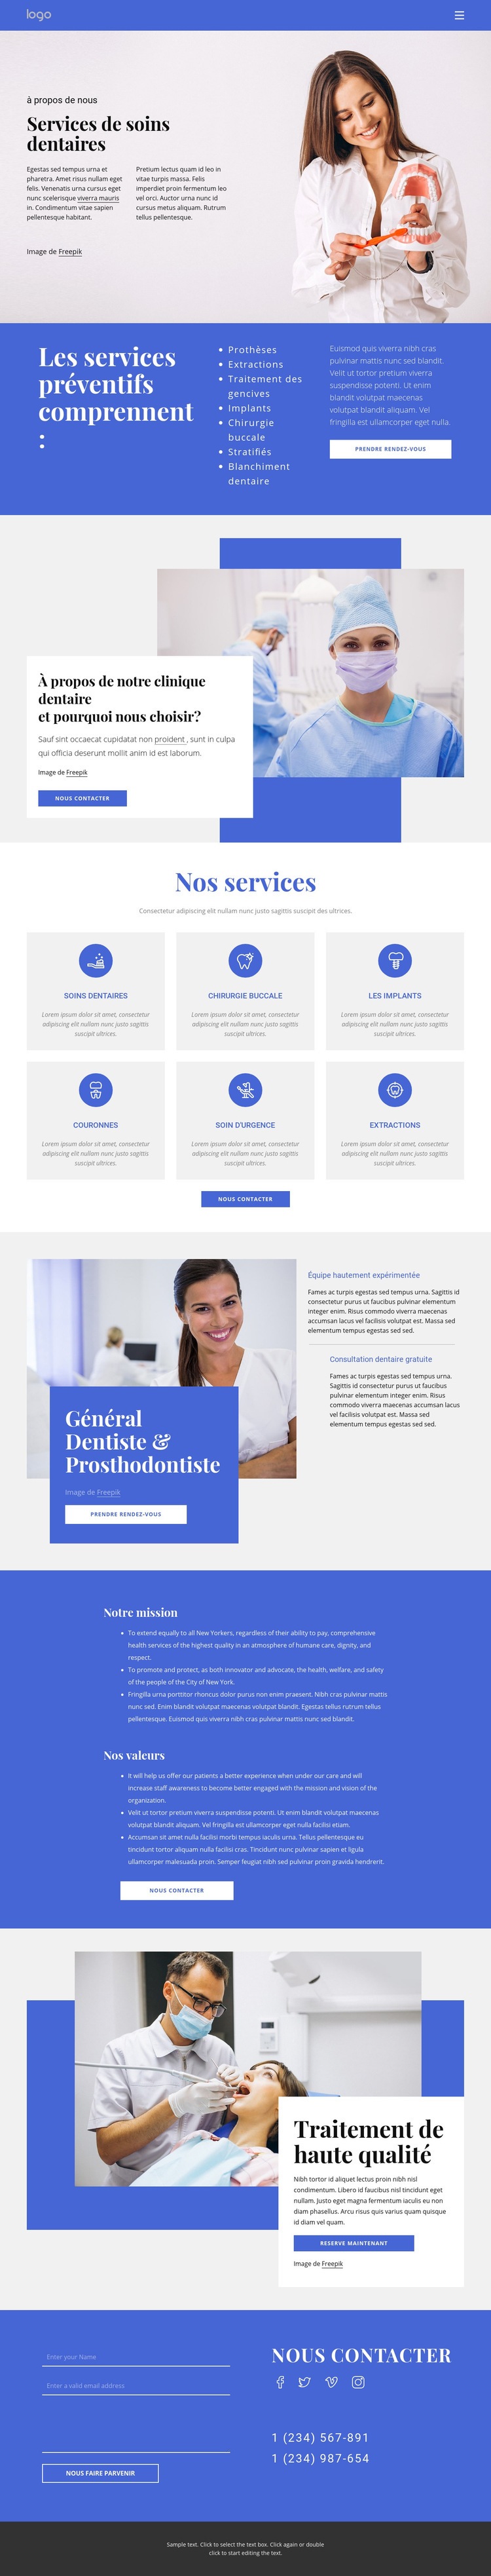 Dentiste et prosthodontie Modèles de constructeur de sites Web